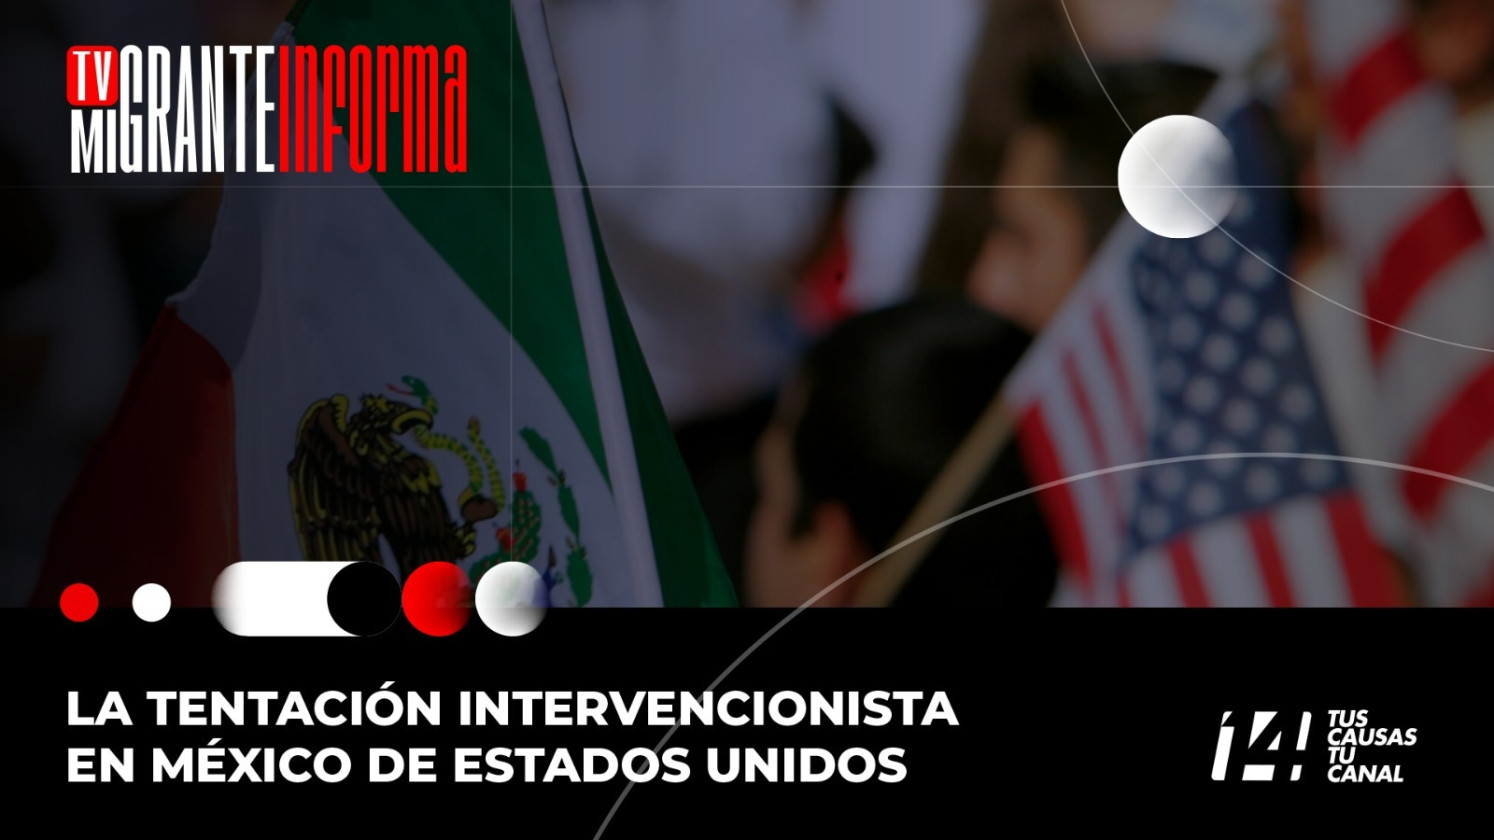 La tentación intervencionista en México de Estados Unidos